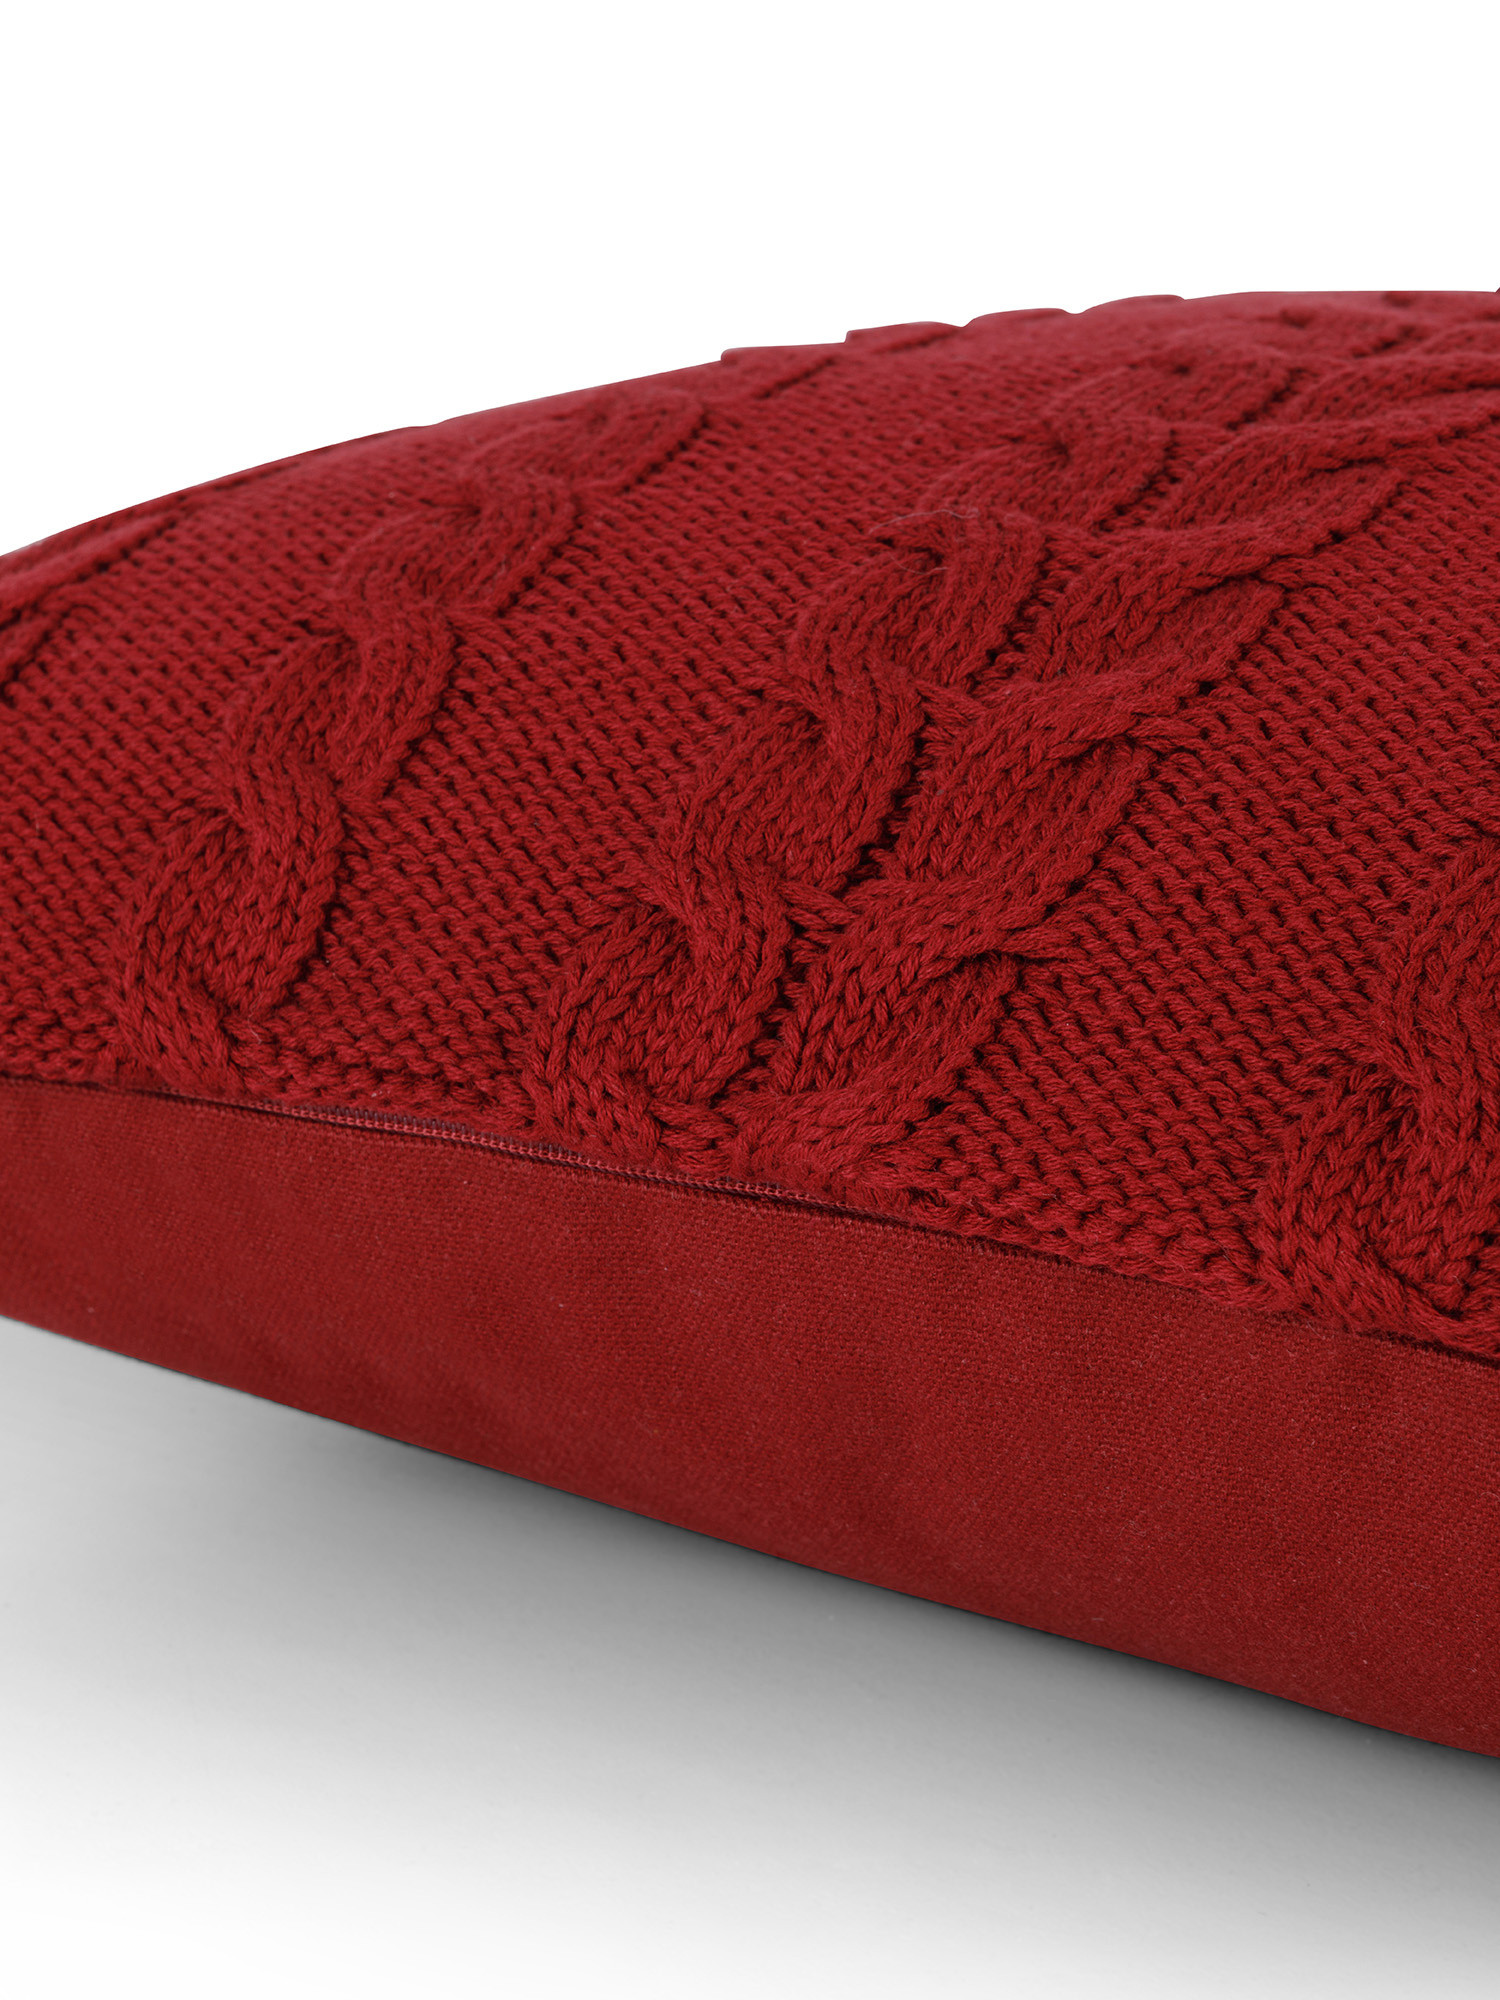 Cuscino in maglia motivo trecce 45x45 cm, Rosso, large image number 2